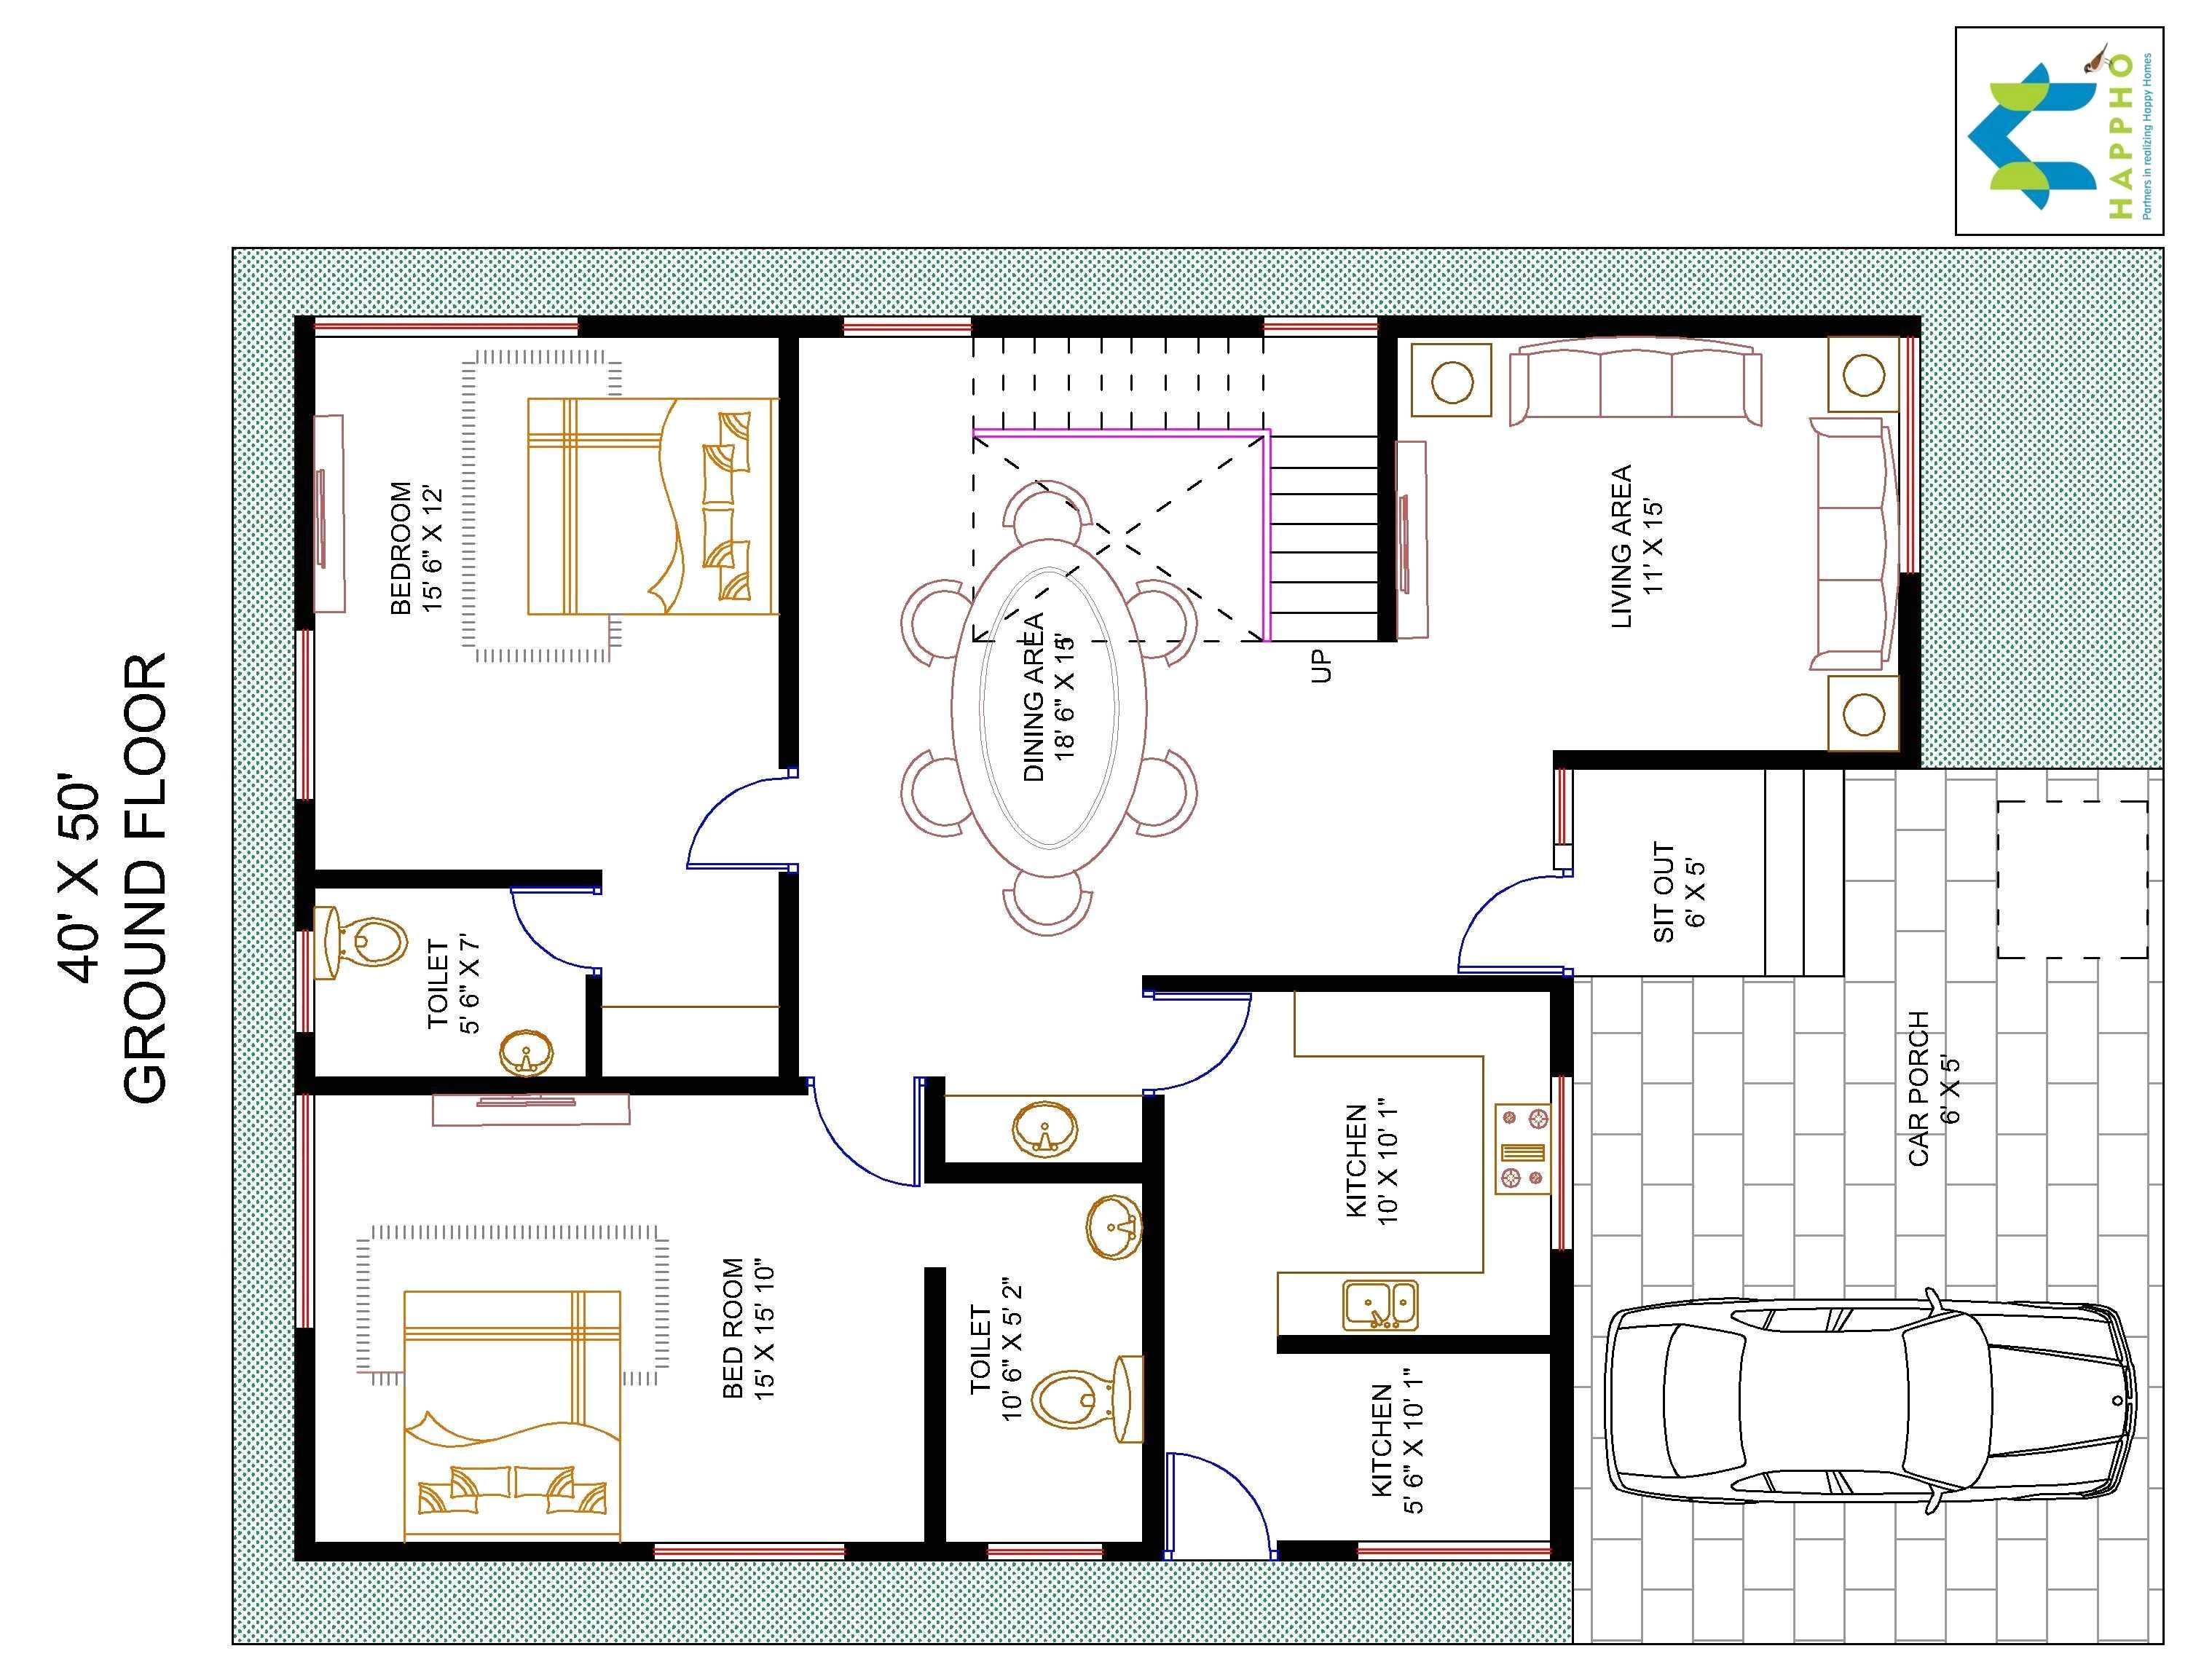 Duplex House Plans 40×50 Site House Plans for 40 X 50 Site Escortsea